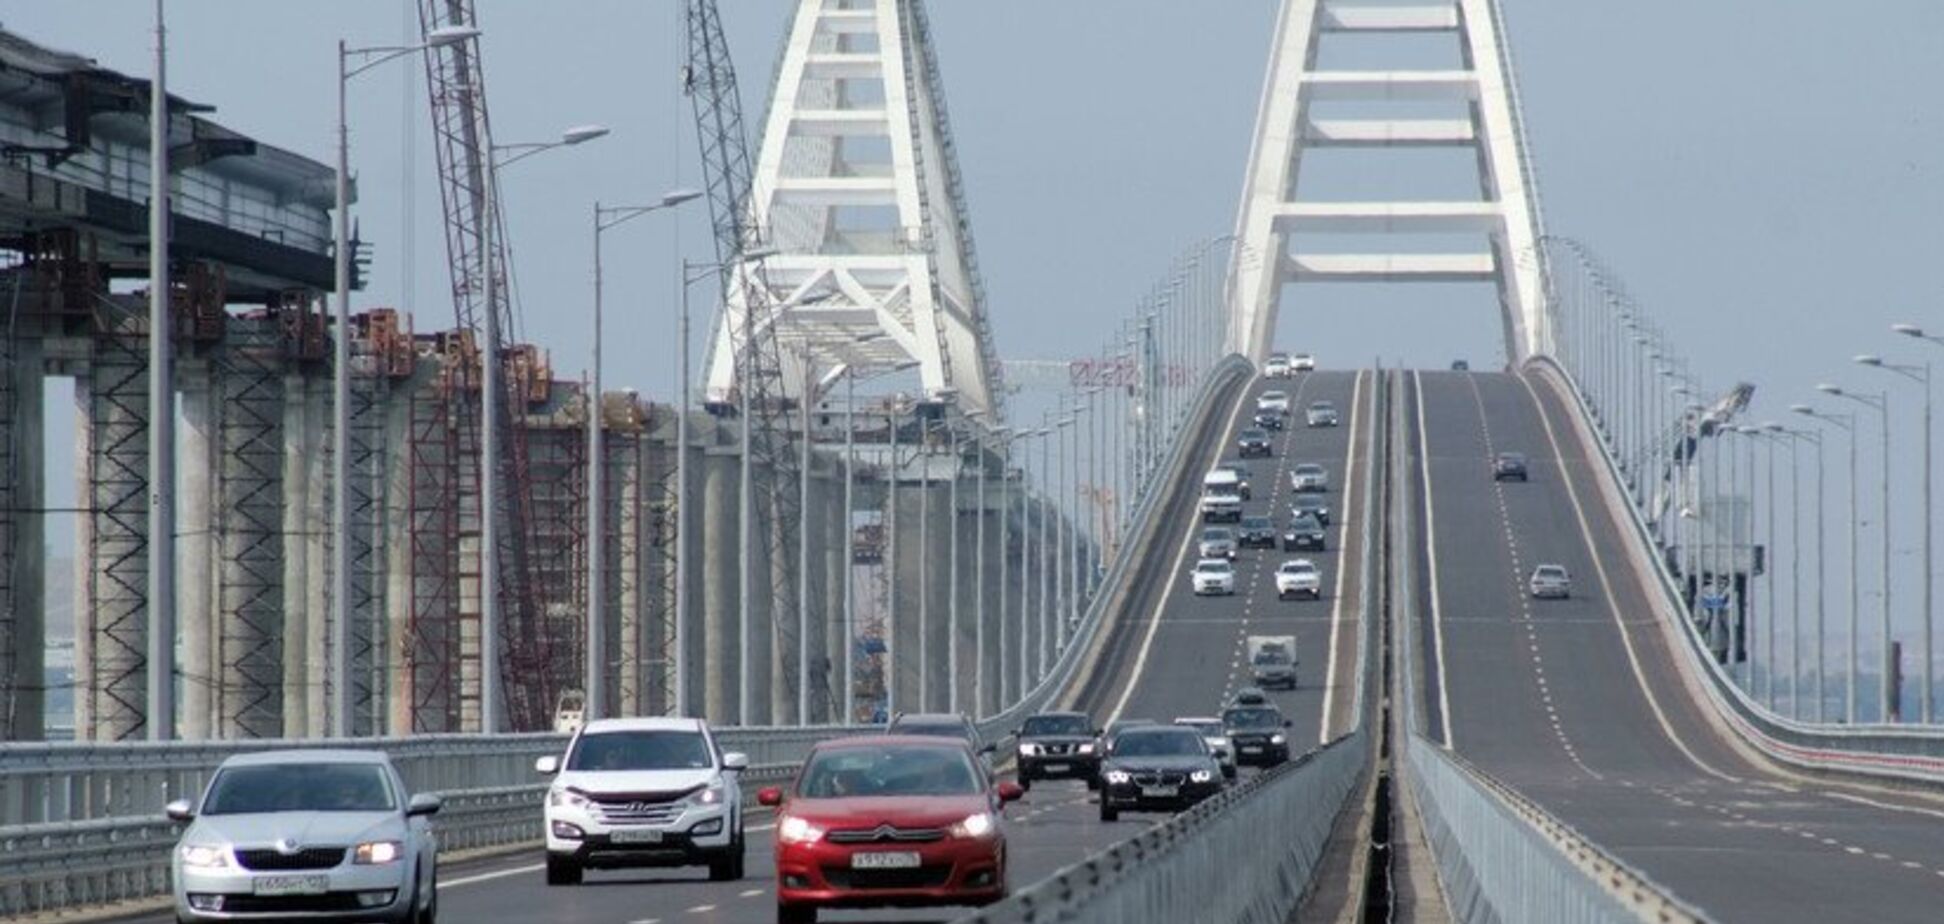 'Ждут новые беды': у крымчан началась истерика из-за Крымского моста